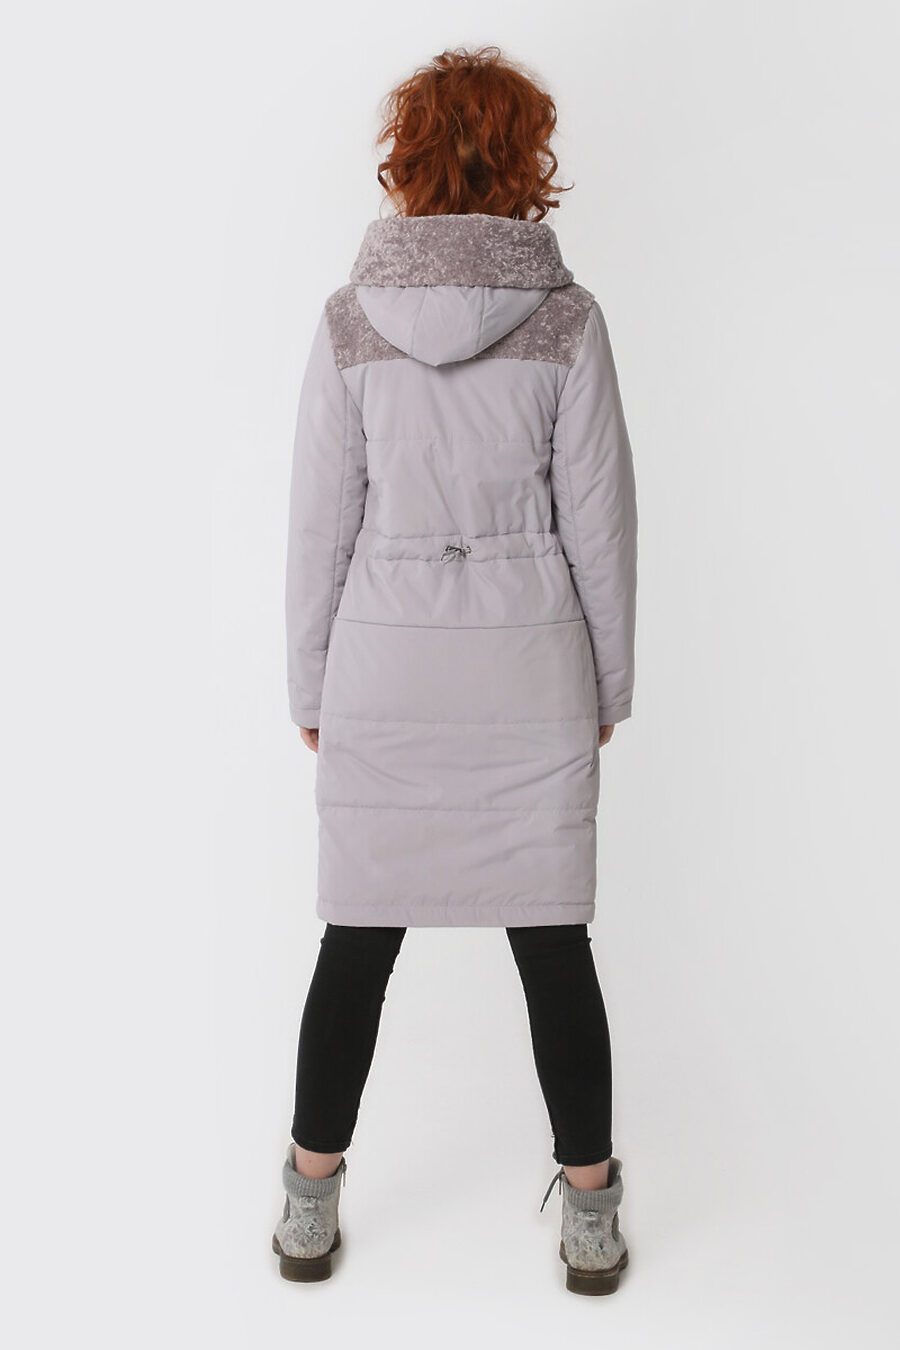 Пальто DIWAY (684803), купить в Moyo.moda